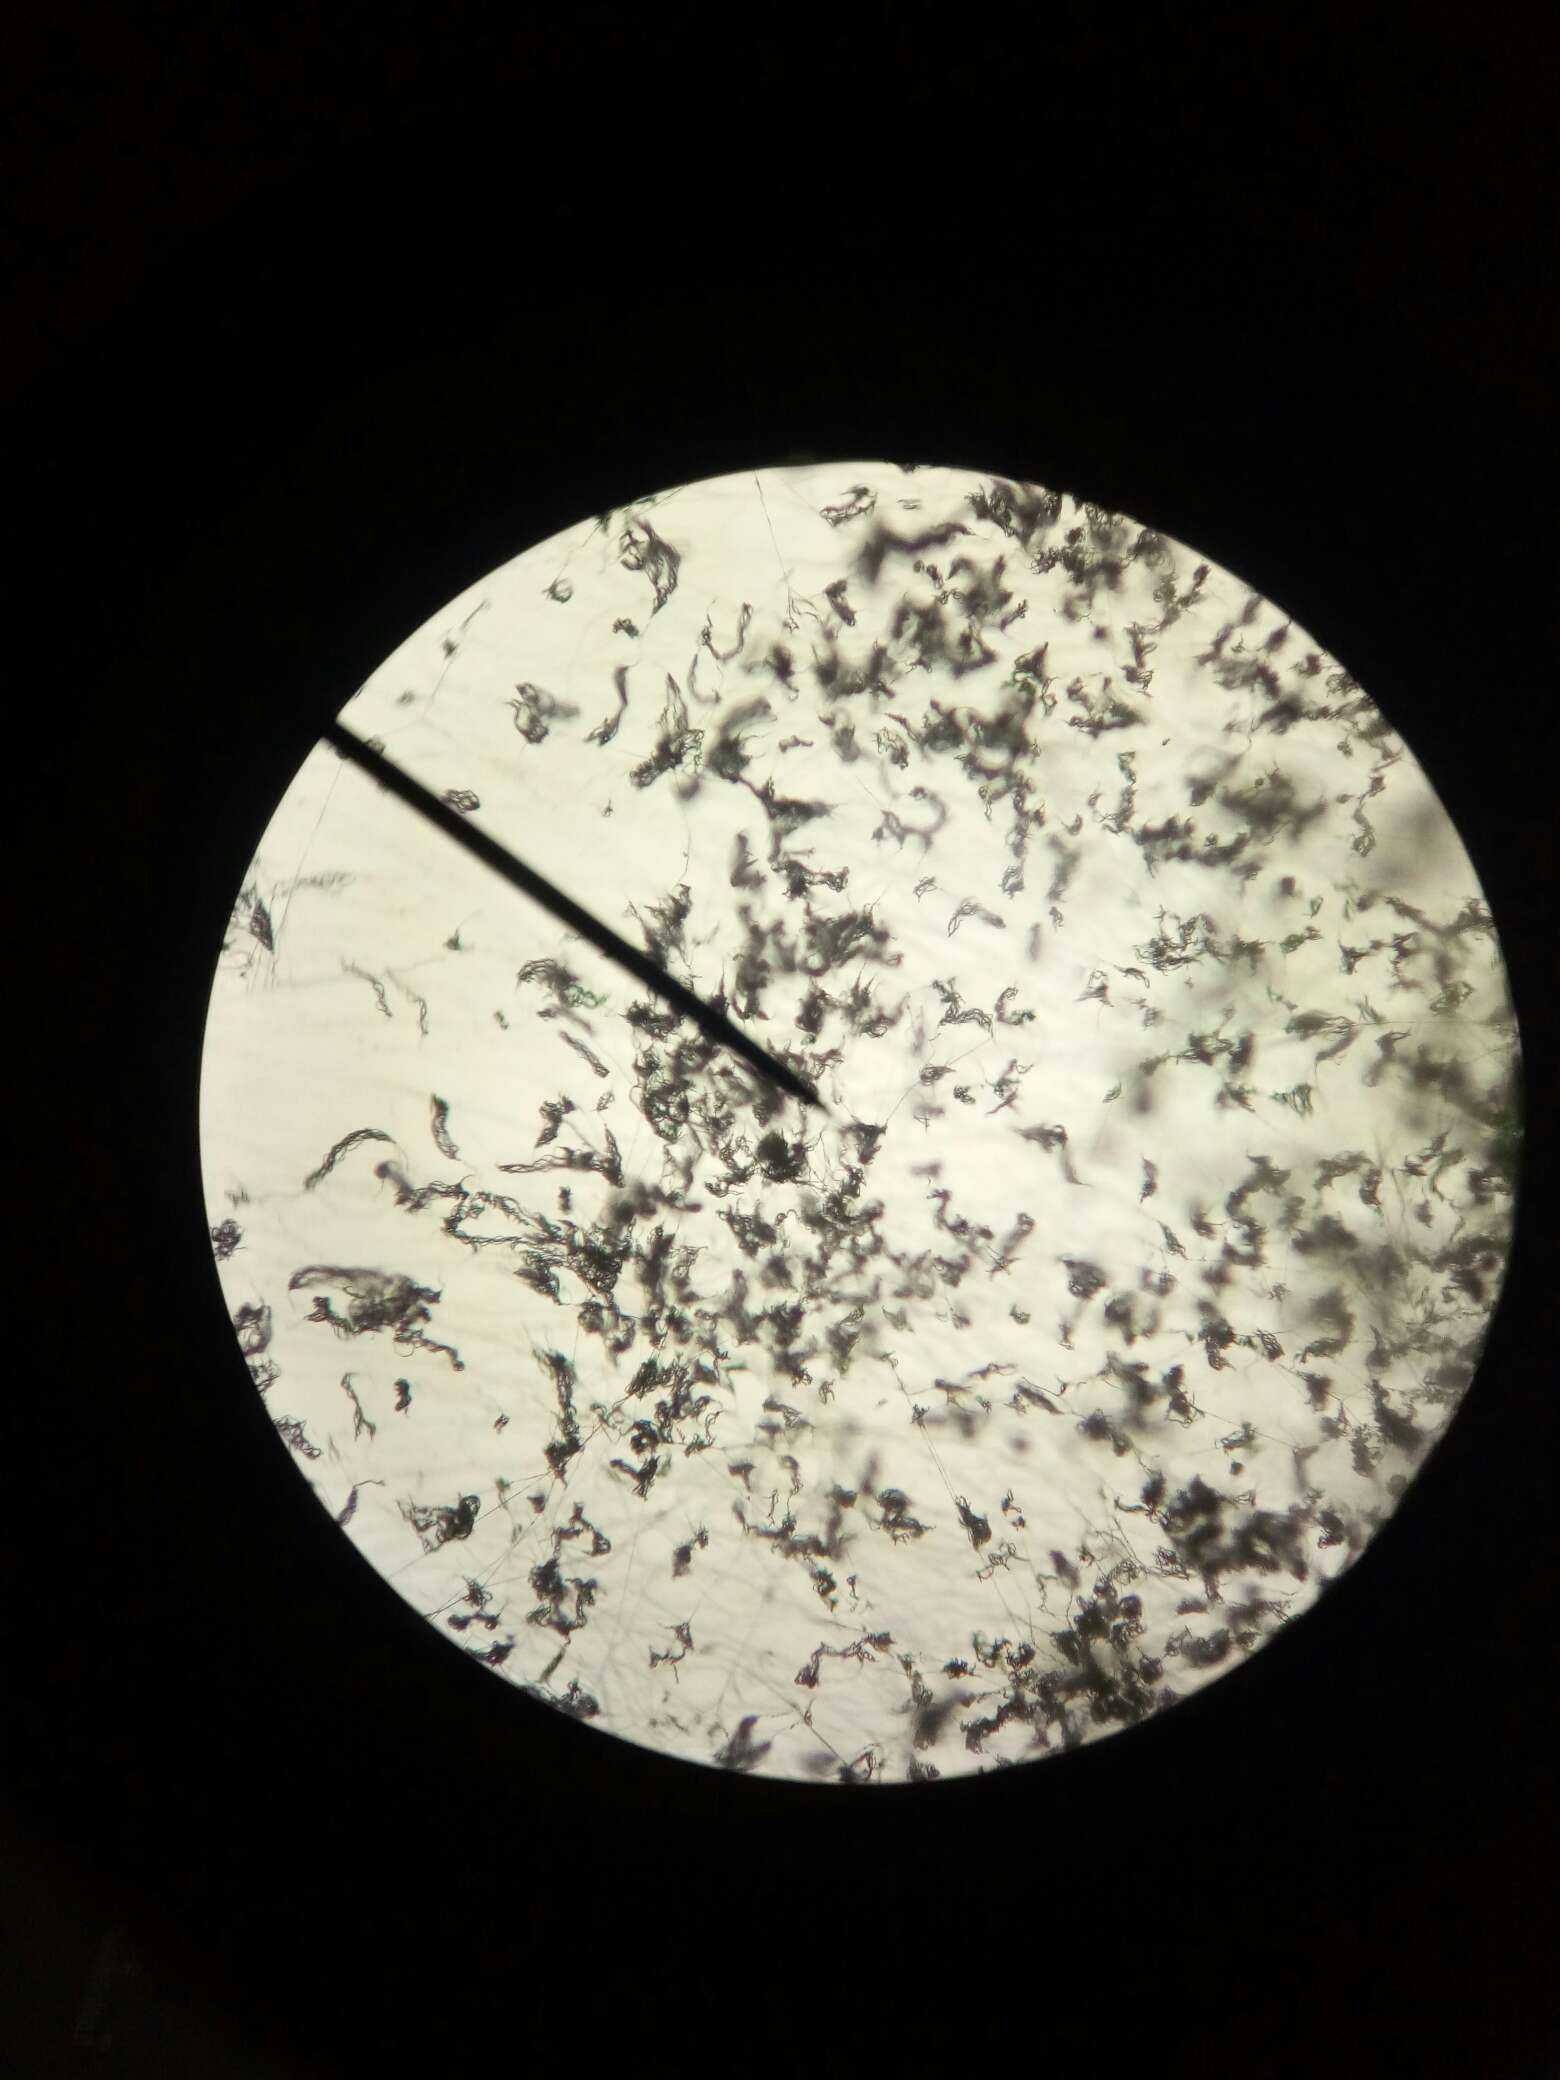 放线菌显微镜图片40倍图片